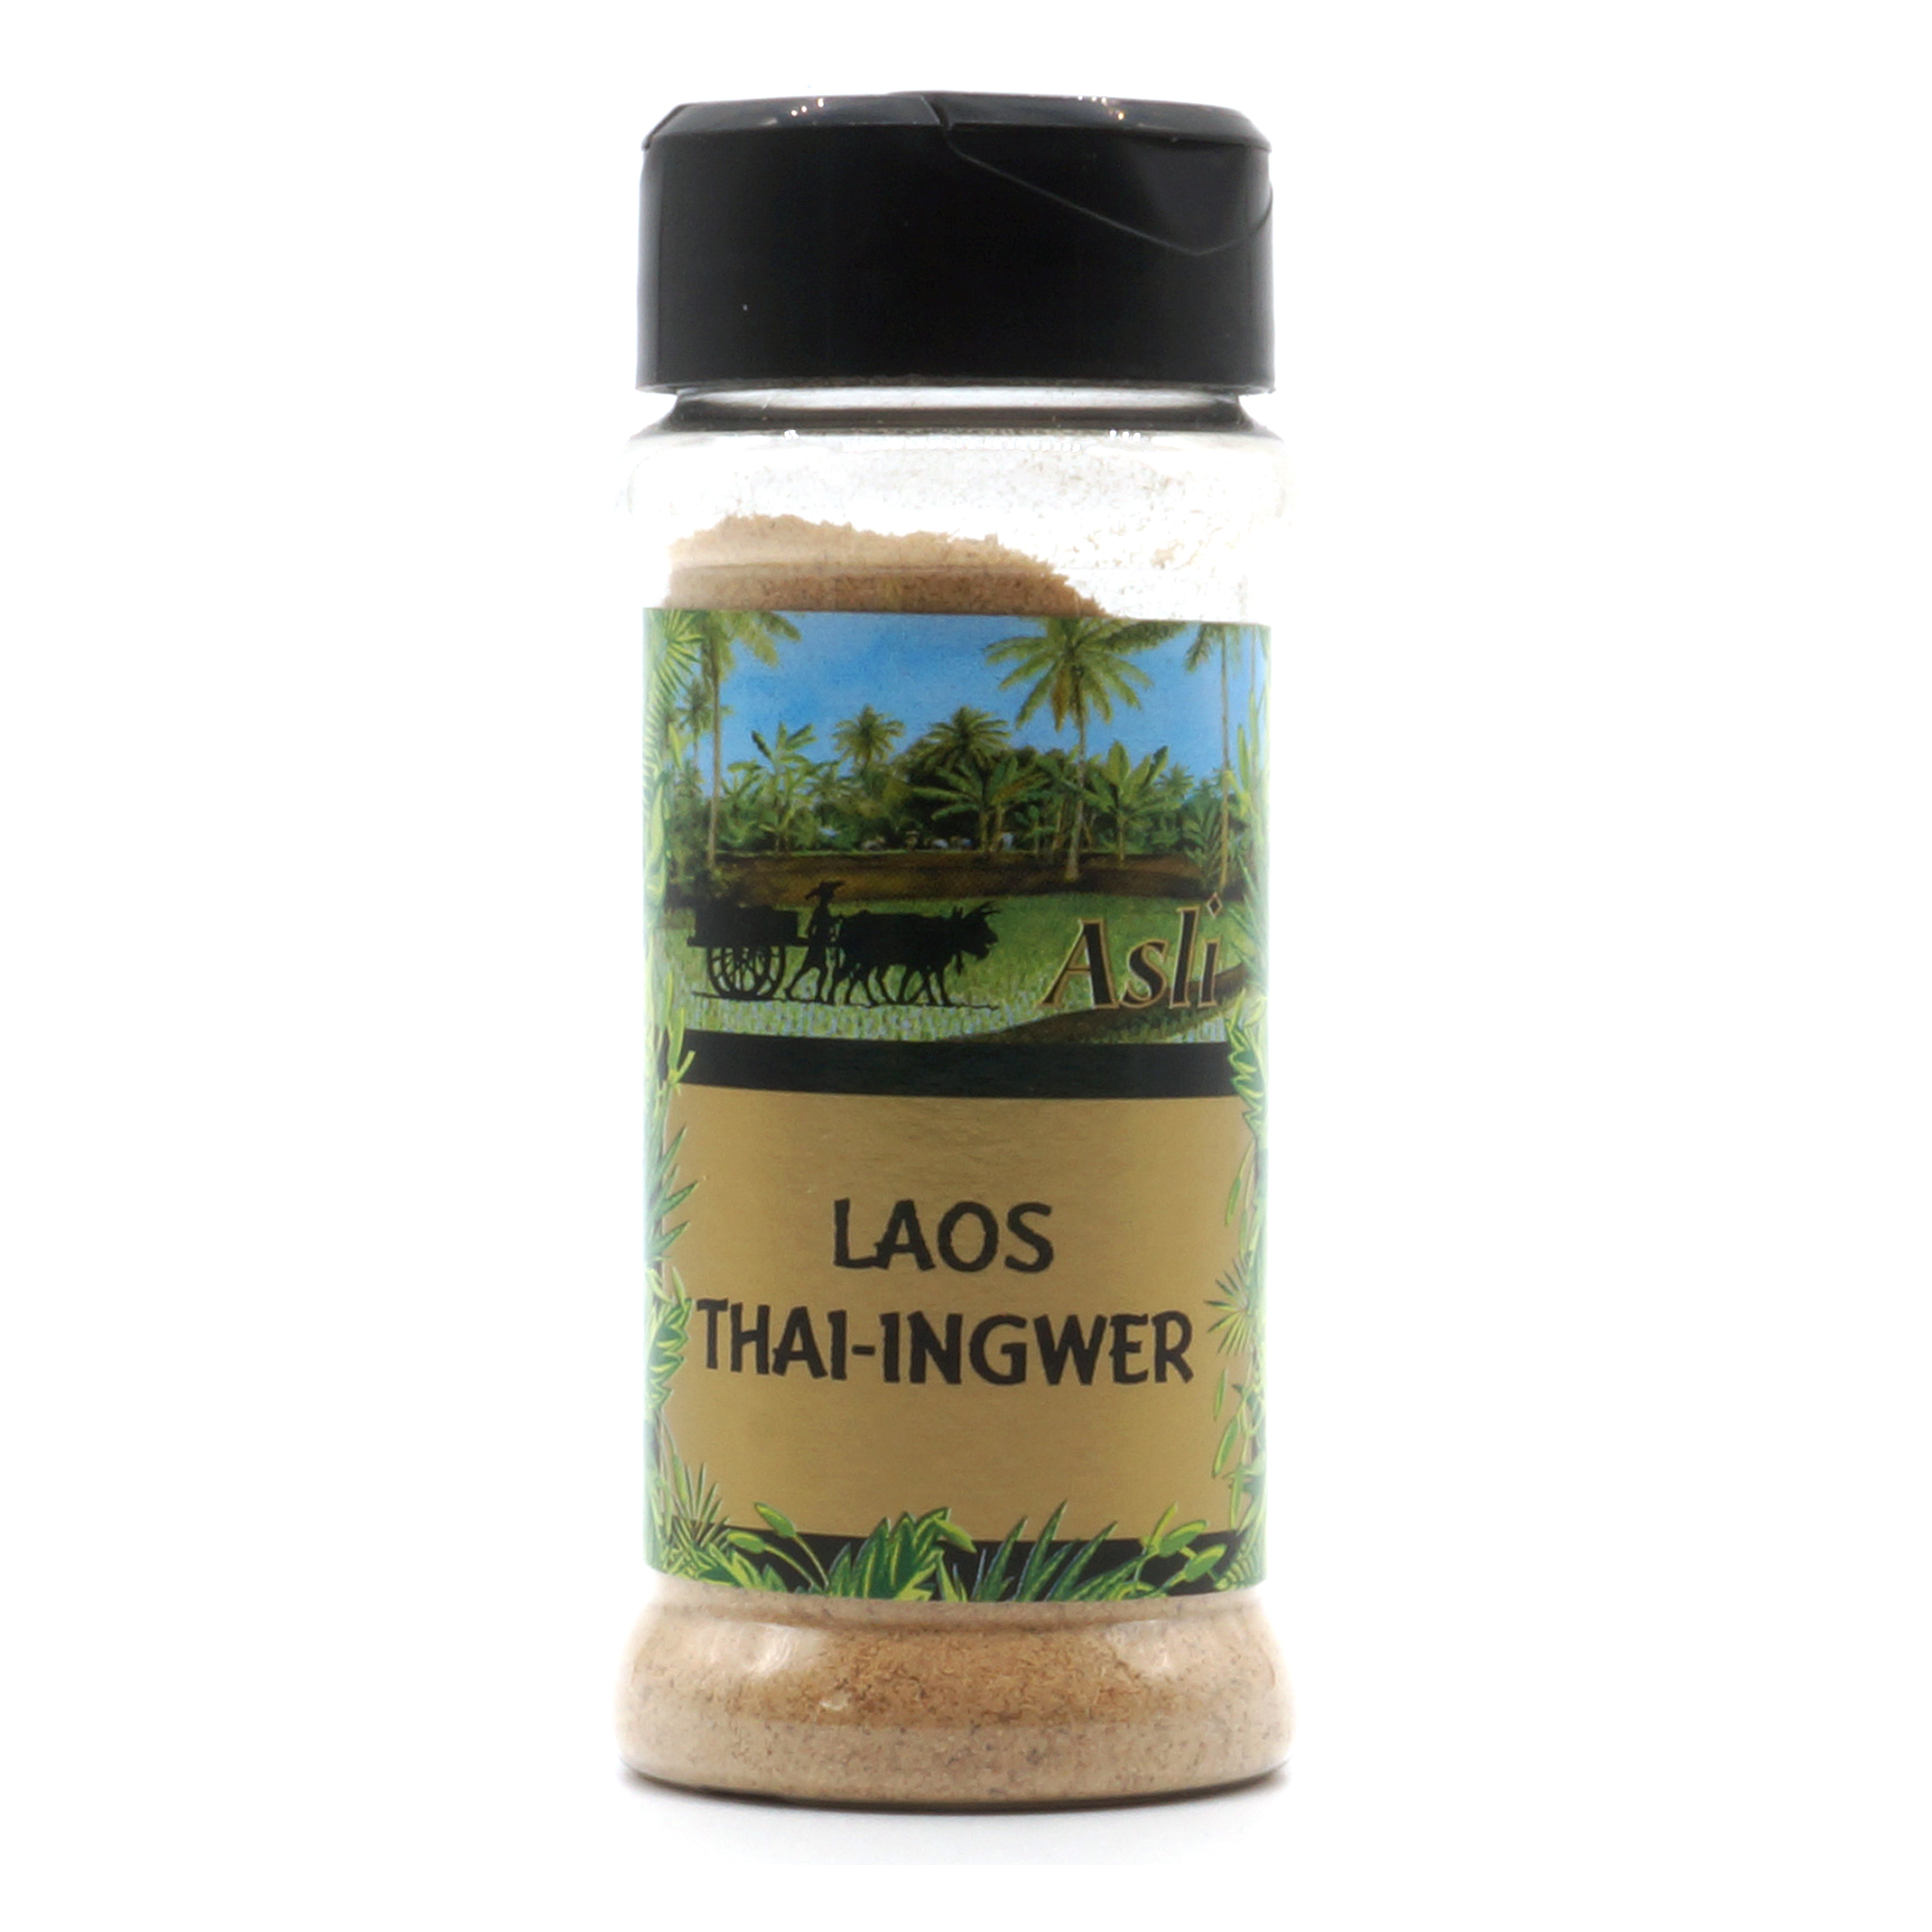 Laos-Pulver (Thai-Ingwer) - Asli - 35g